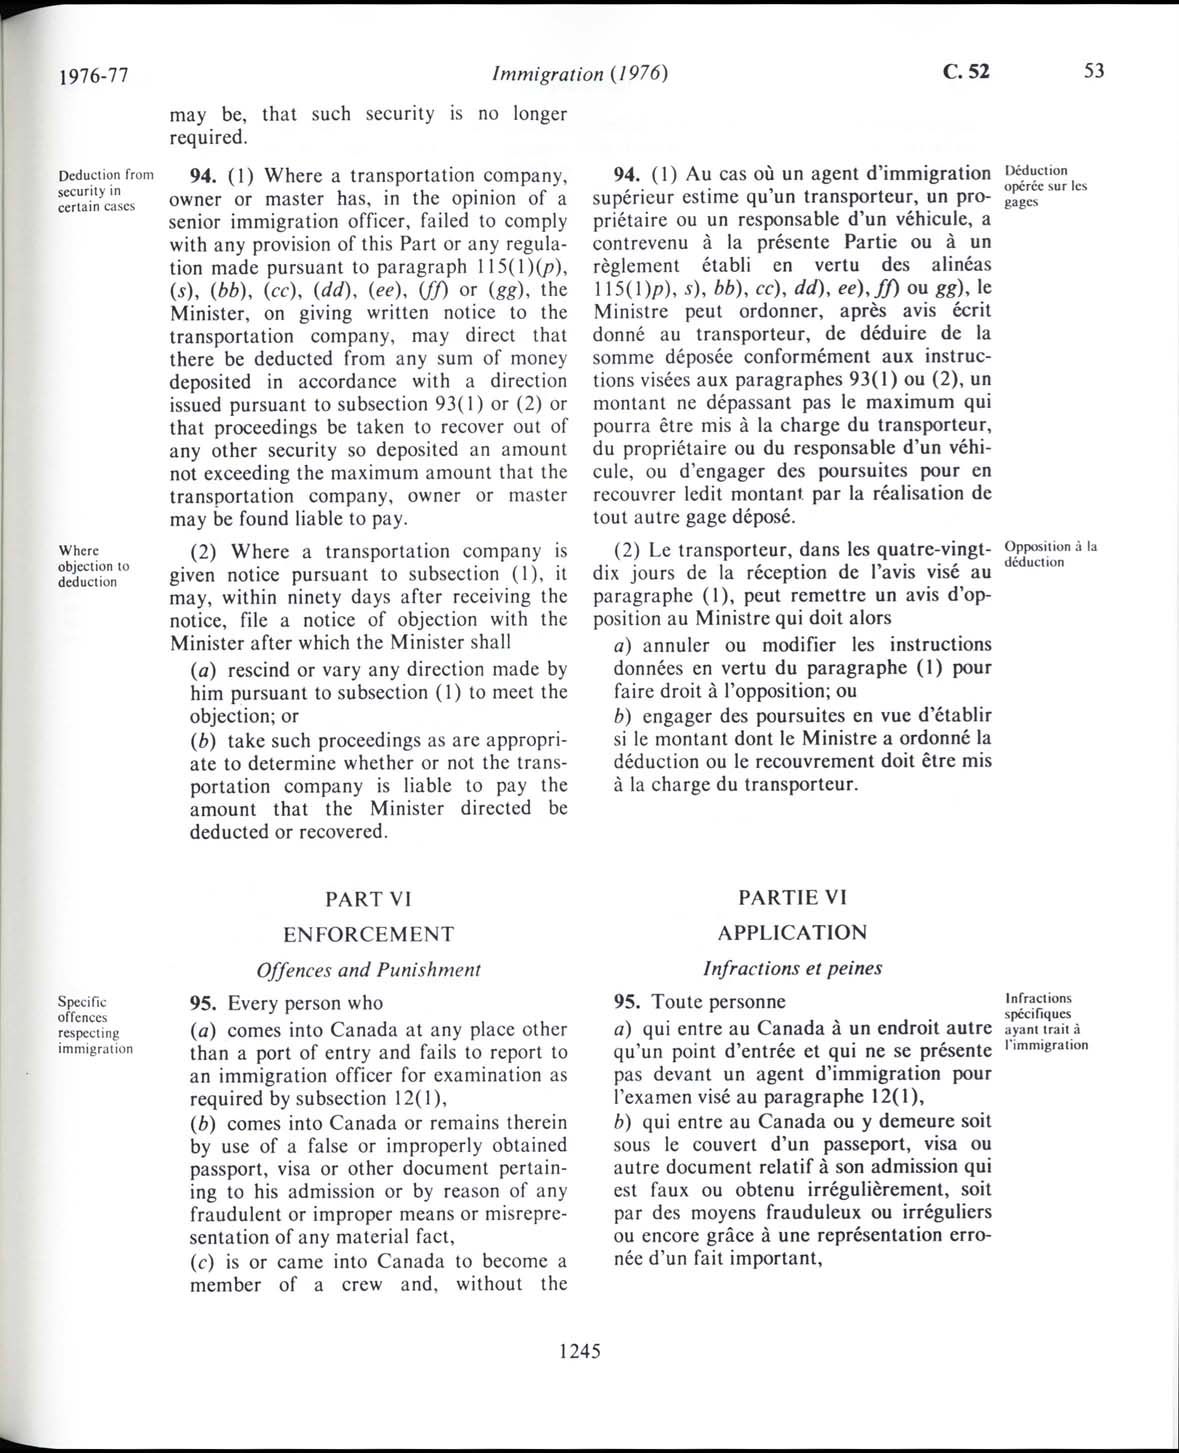 Page 1245 Loi sur l’immigration de 1976